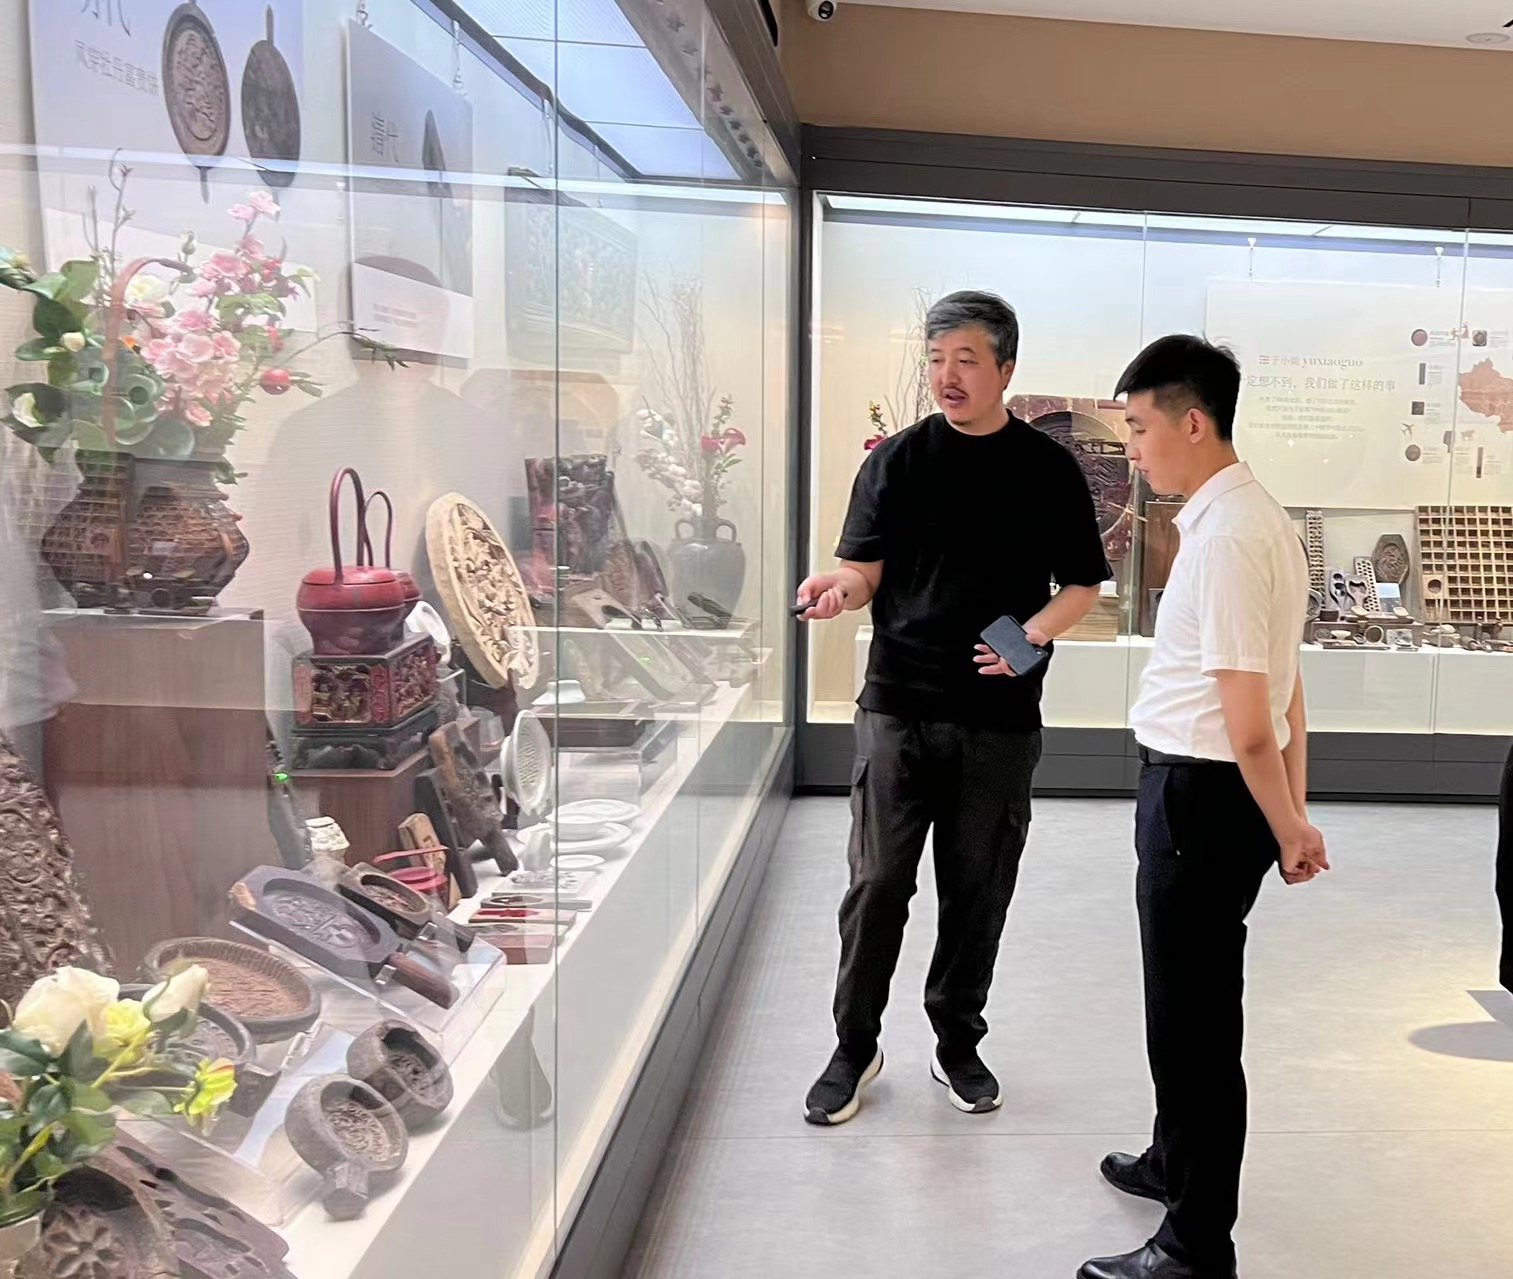 于小菓点心模具博物馆馆长于进江、北京佰域互联科技有限公司CEO张国彪